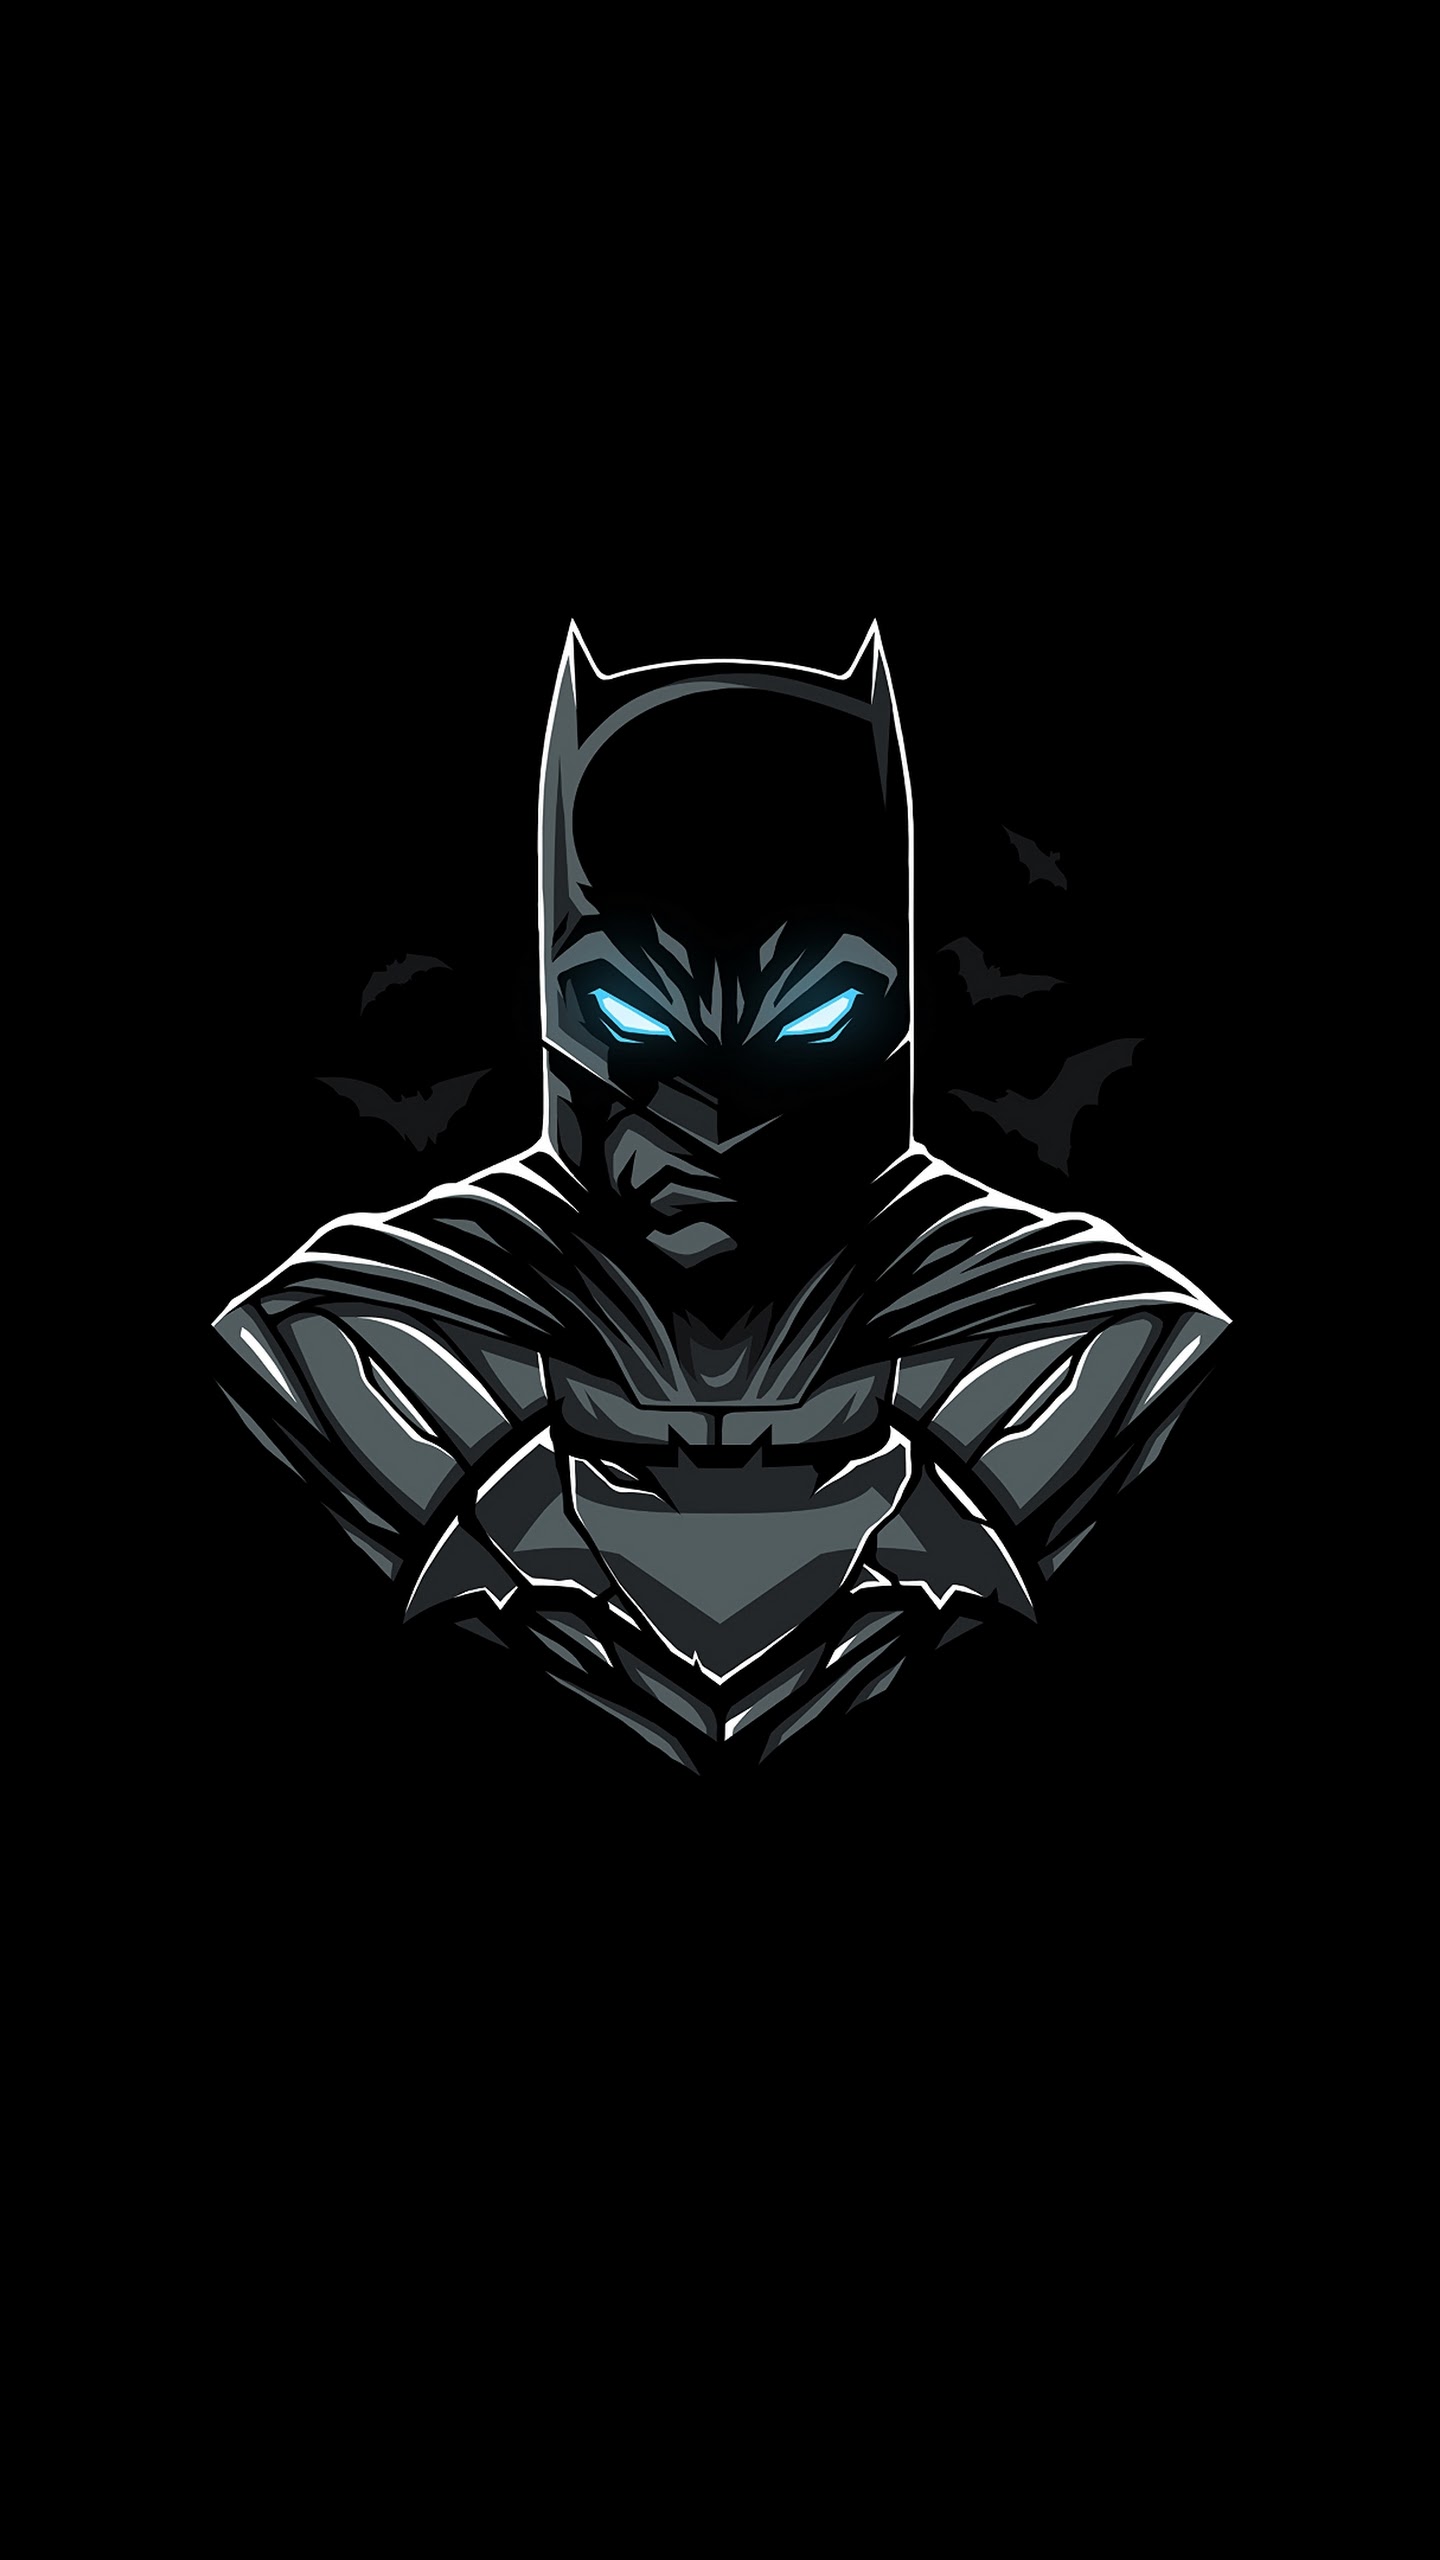 Tinhtevn  Quy định thi chế hình Batman trúng S7 Edge Injustice  YouTube